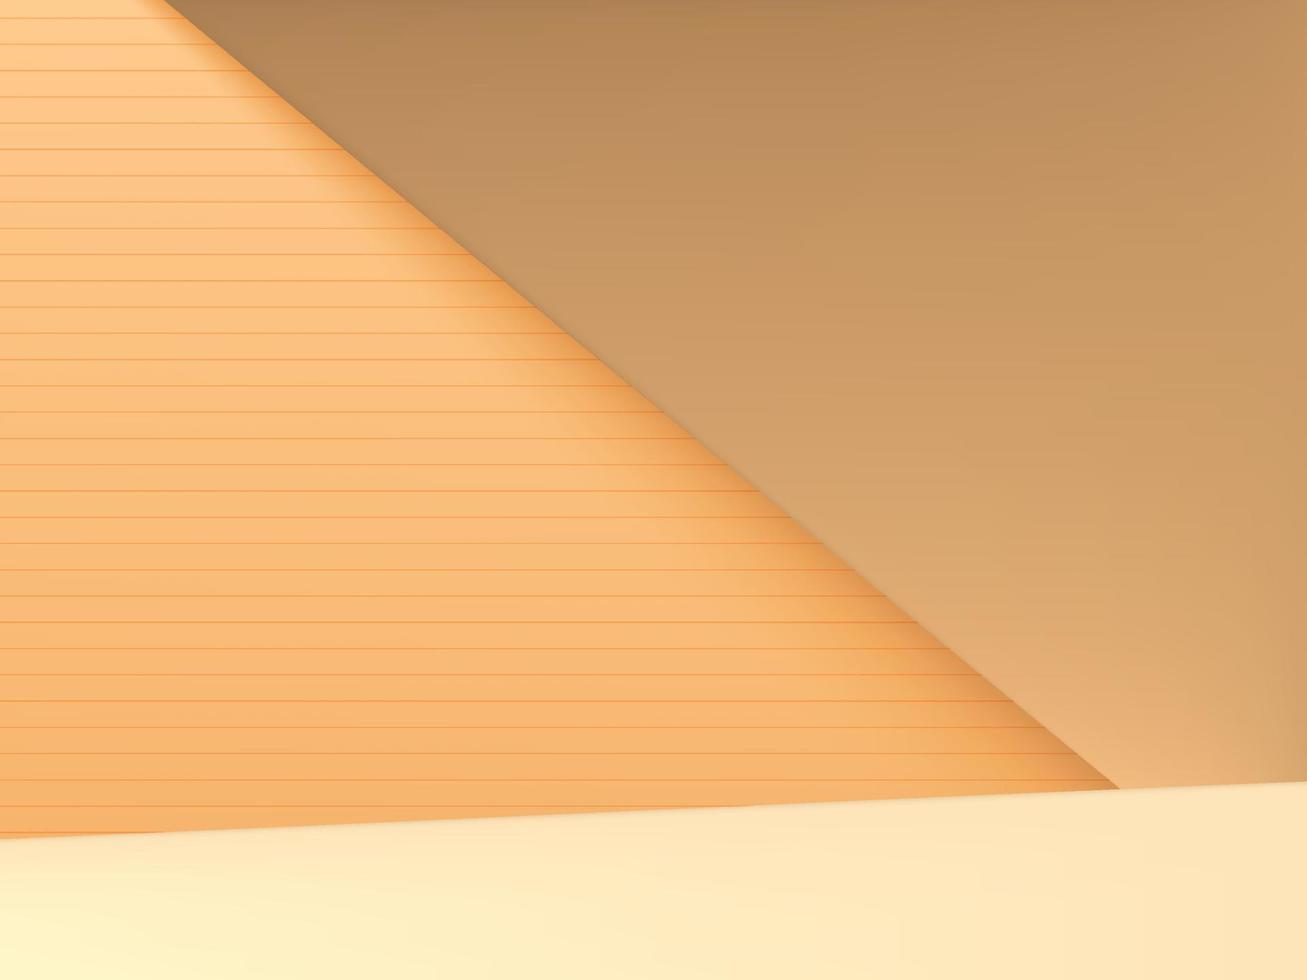 image vectorielle arrière-plan géométrique minimal tourné en studio pour l'affichage du produit, orange pastel et jaune vecteur